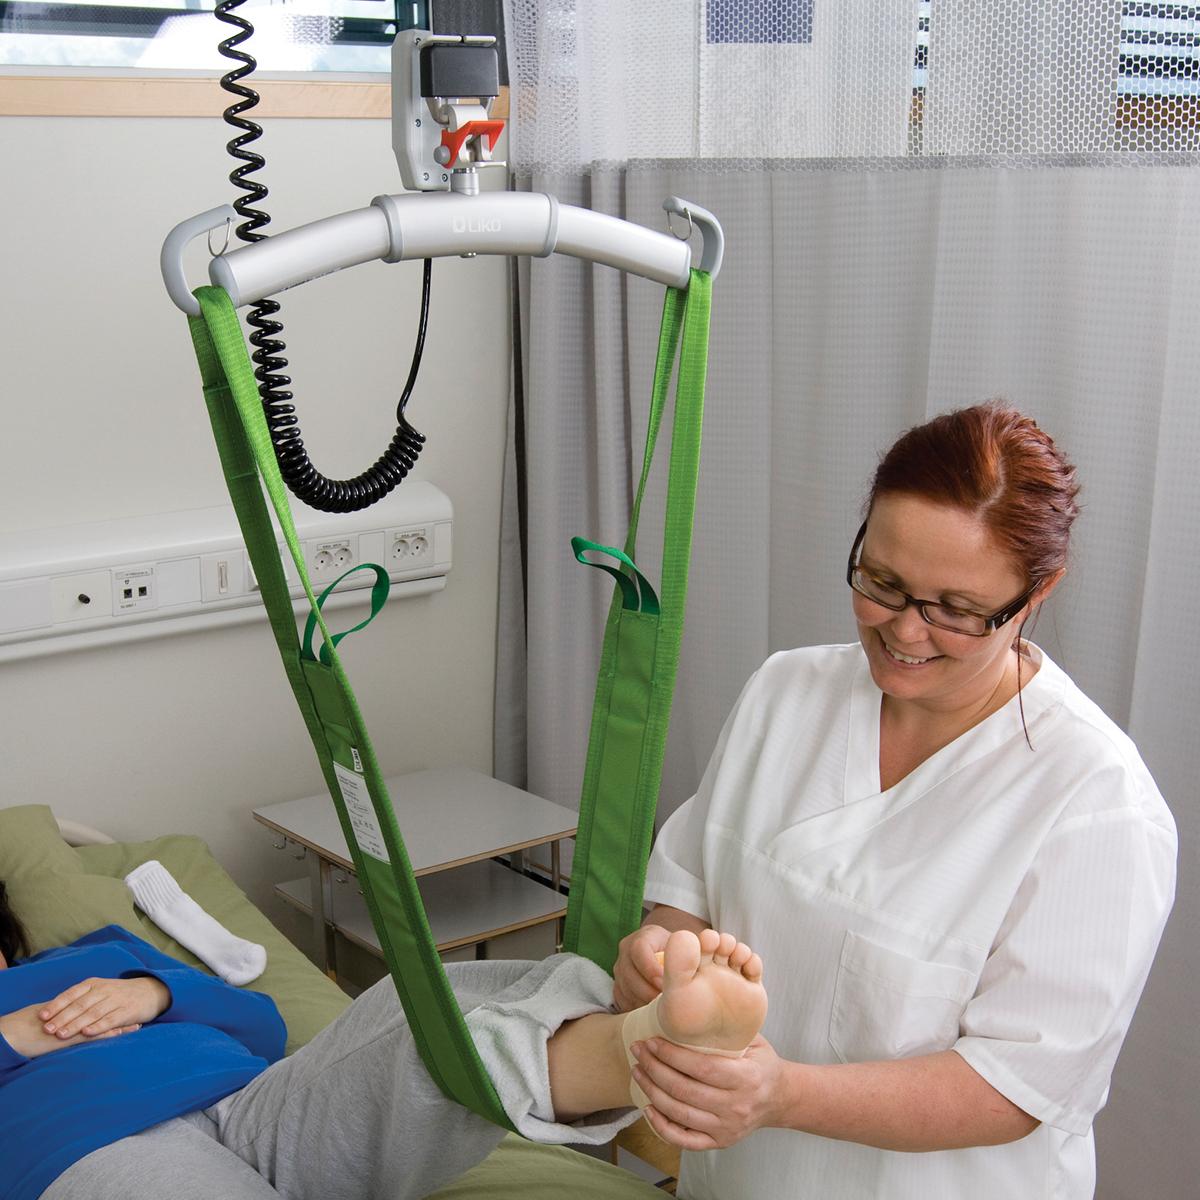 緑色の MultiStrap™ リフト補助具を使用して、リクライニング状態の患者さんの左足をストラップで支えている眼鏡をかけた女性医師